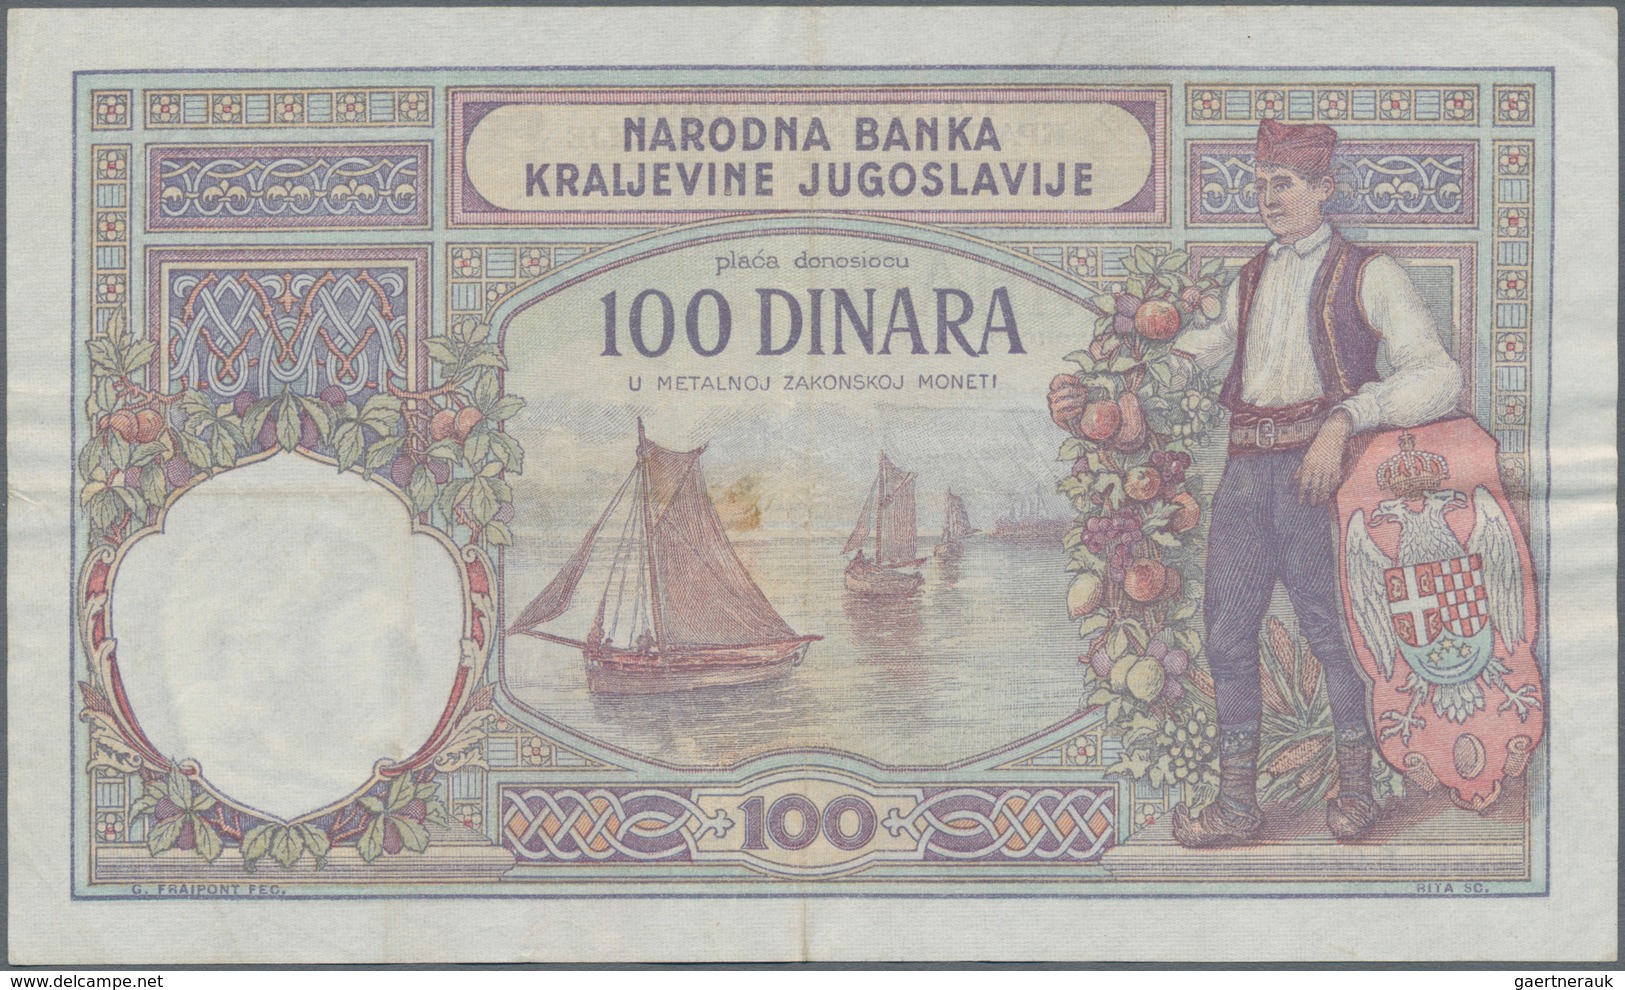 Yugoslavia / Jugoslavien: Kingdom of Yugoslavia set with 5 banknotes comprising 100 Dinara 1929 with